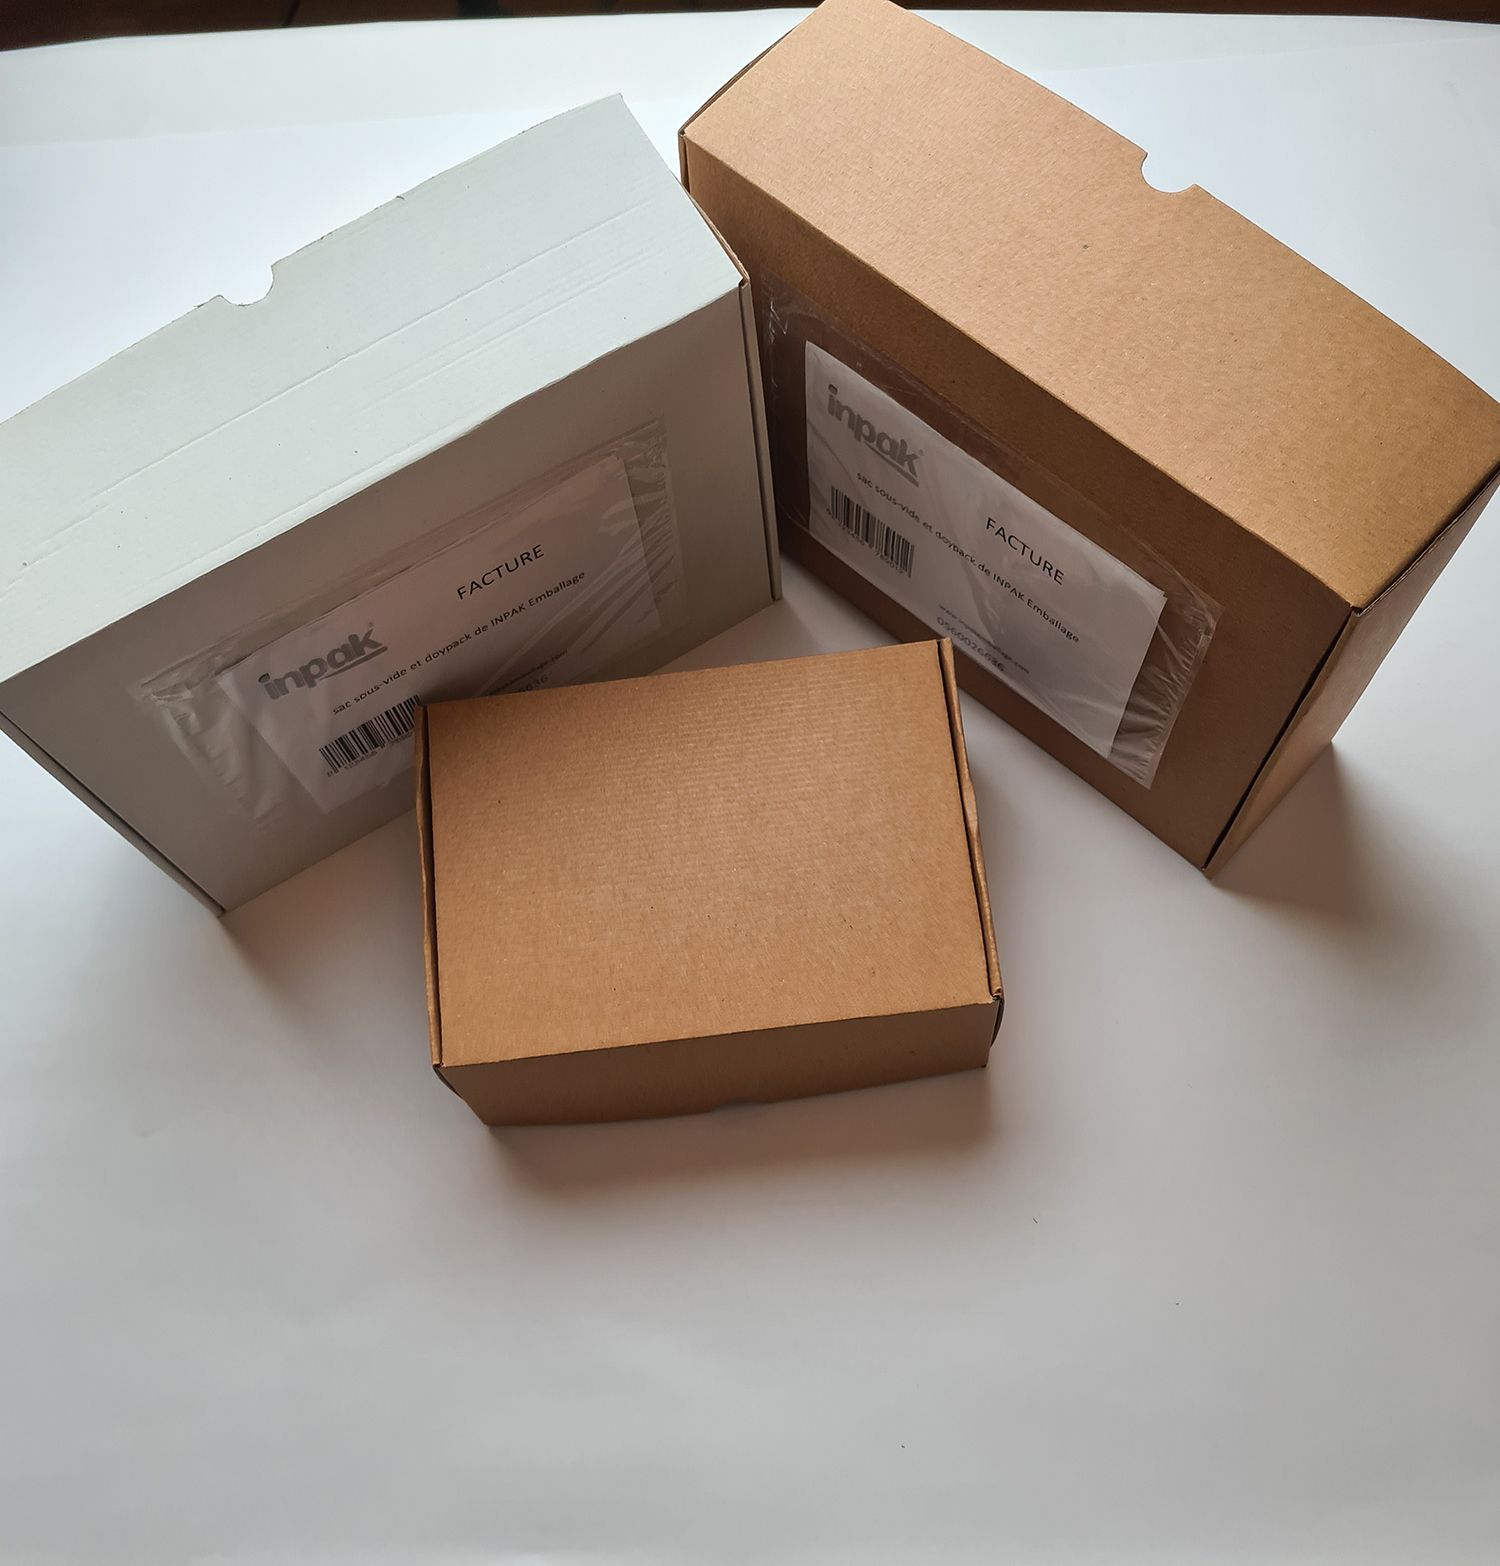 Boîte carton avec fermeture renforcée intérieur blanc 250 X 200 x 100